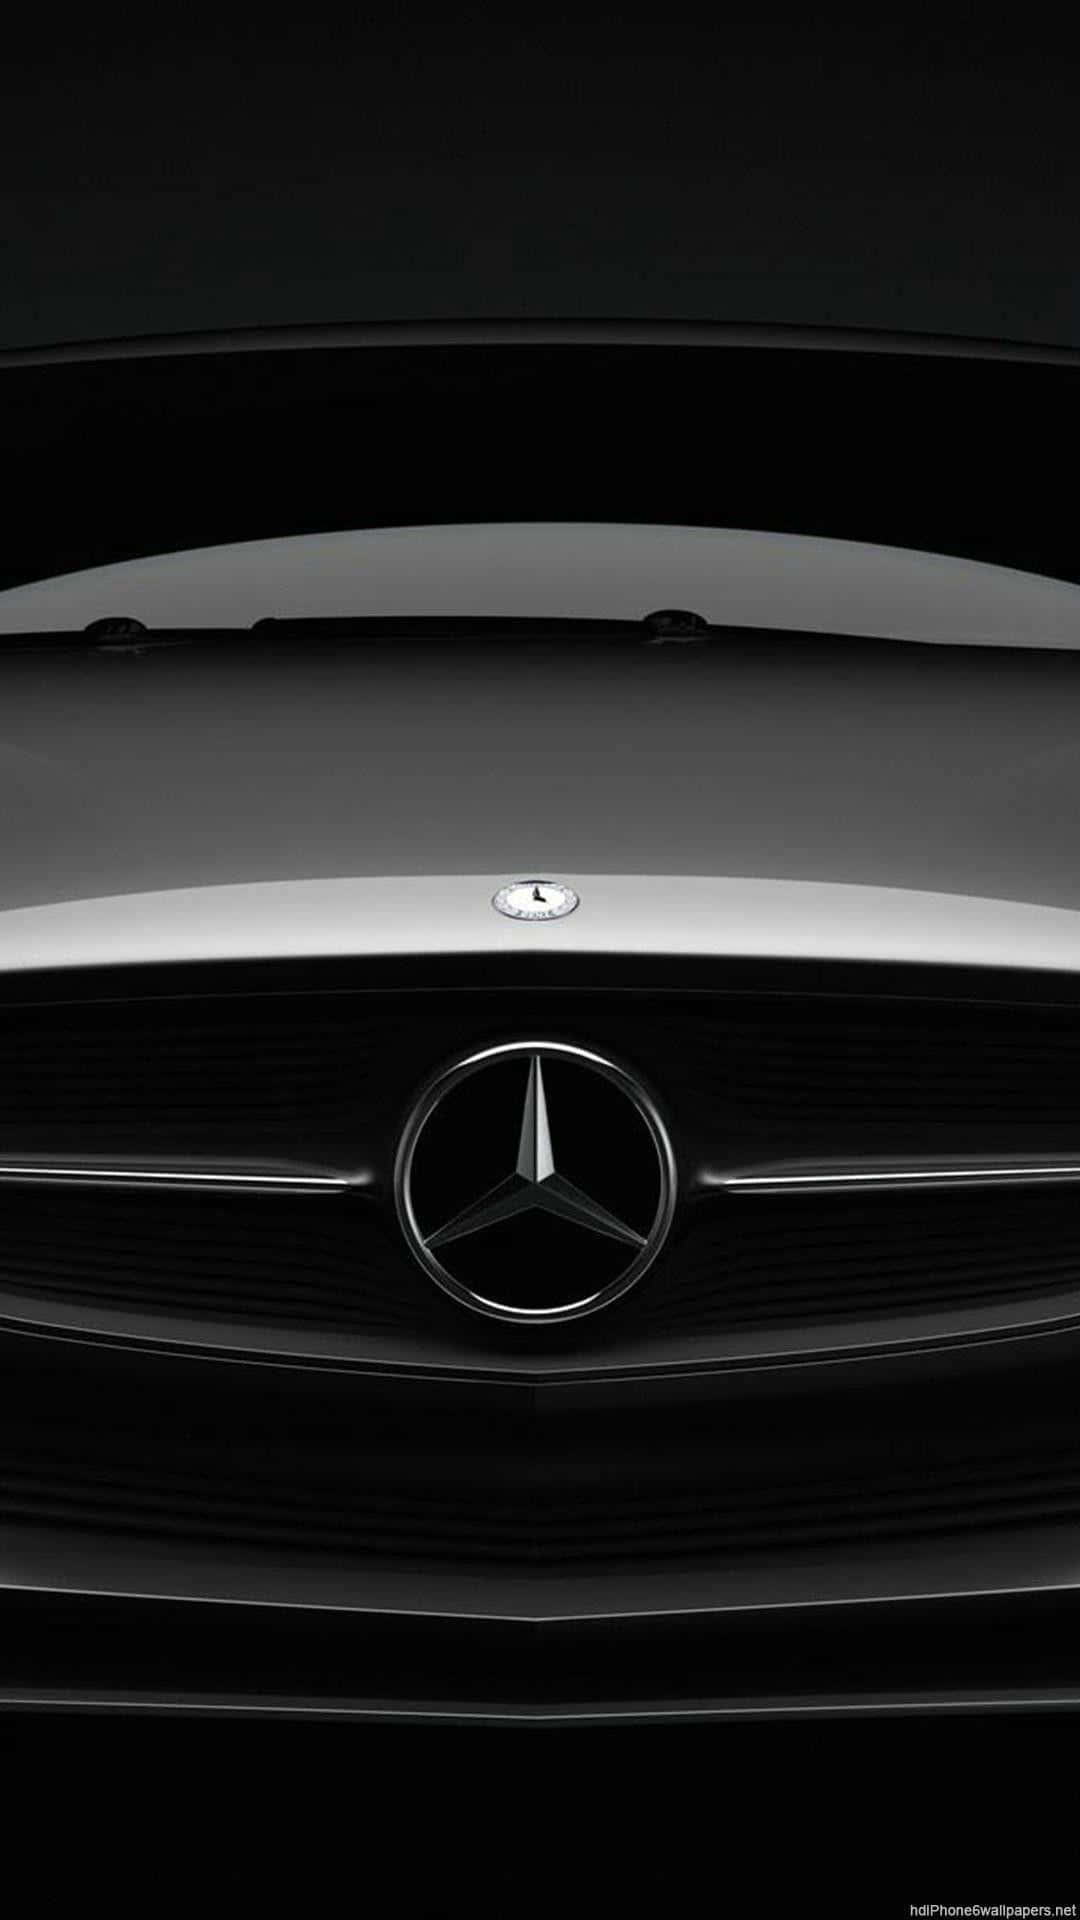 Närbildav En Silverfärgad Klassisk Mercedes Till Iphone-skrivbordsunderlägg. Wallpaper